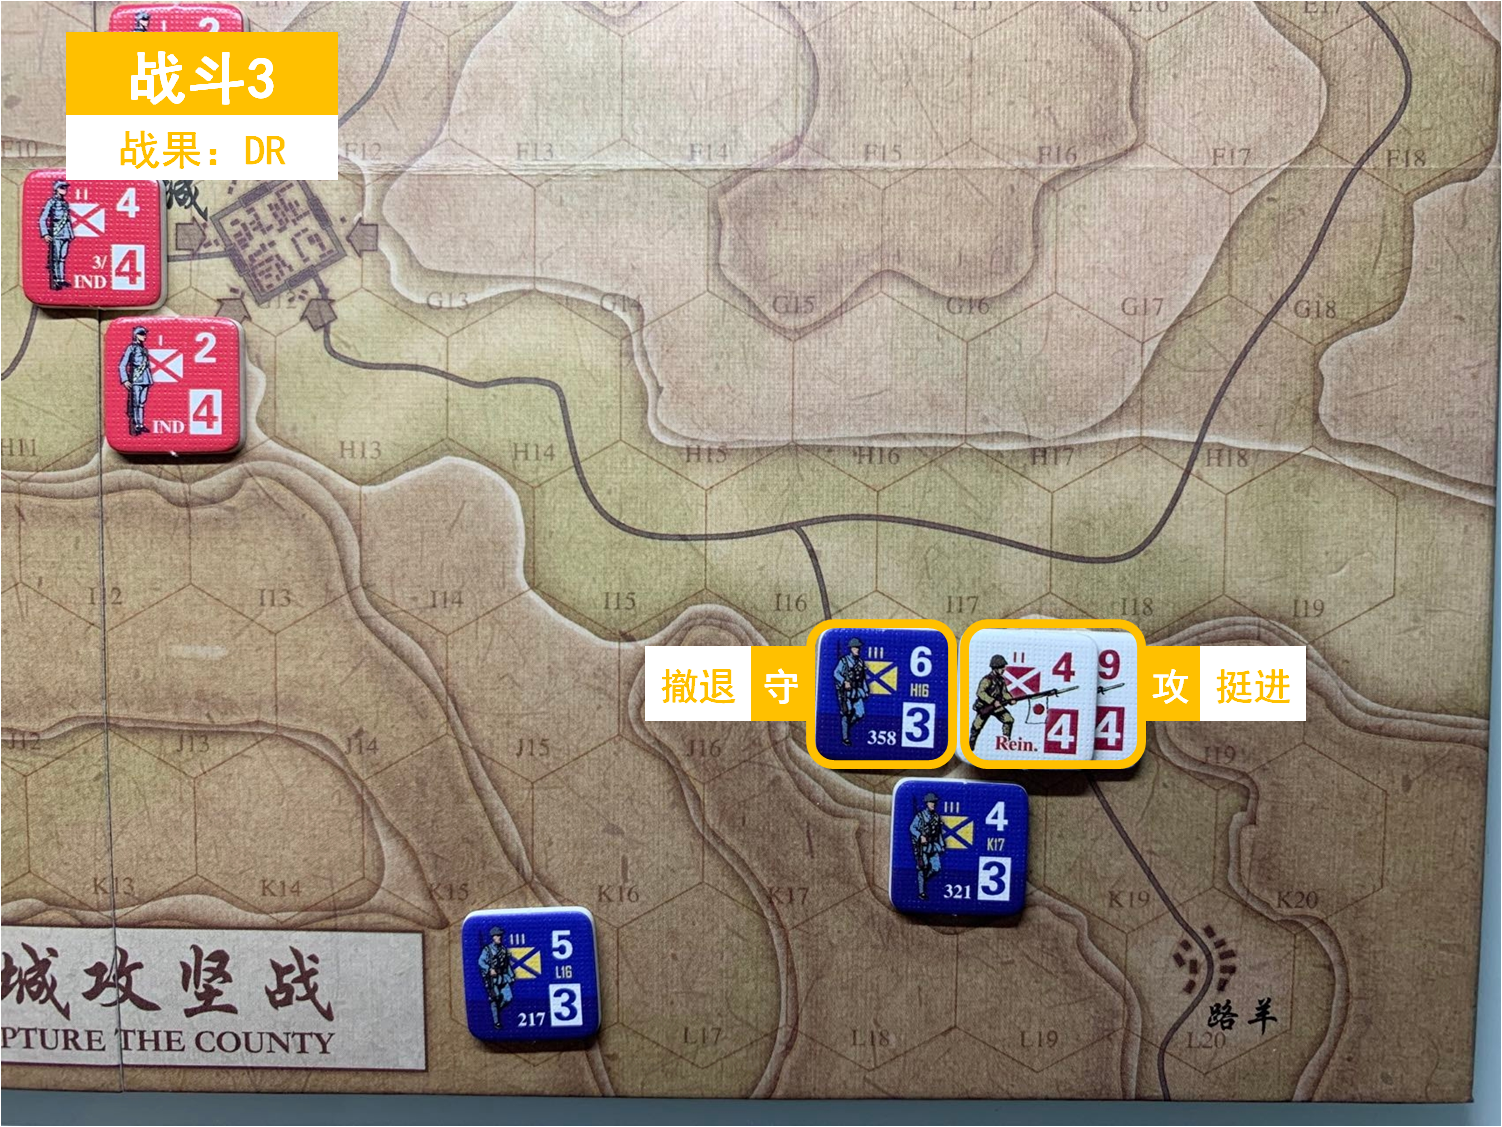 第一回合 日方戰鬥階段 戰鬥3 戰鬥結果